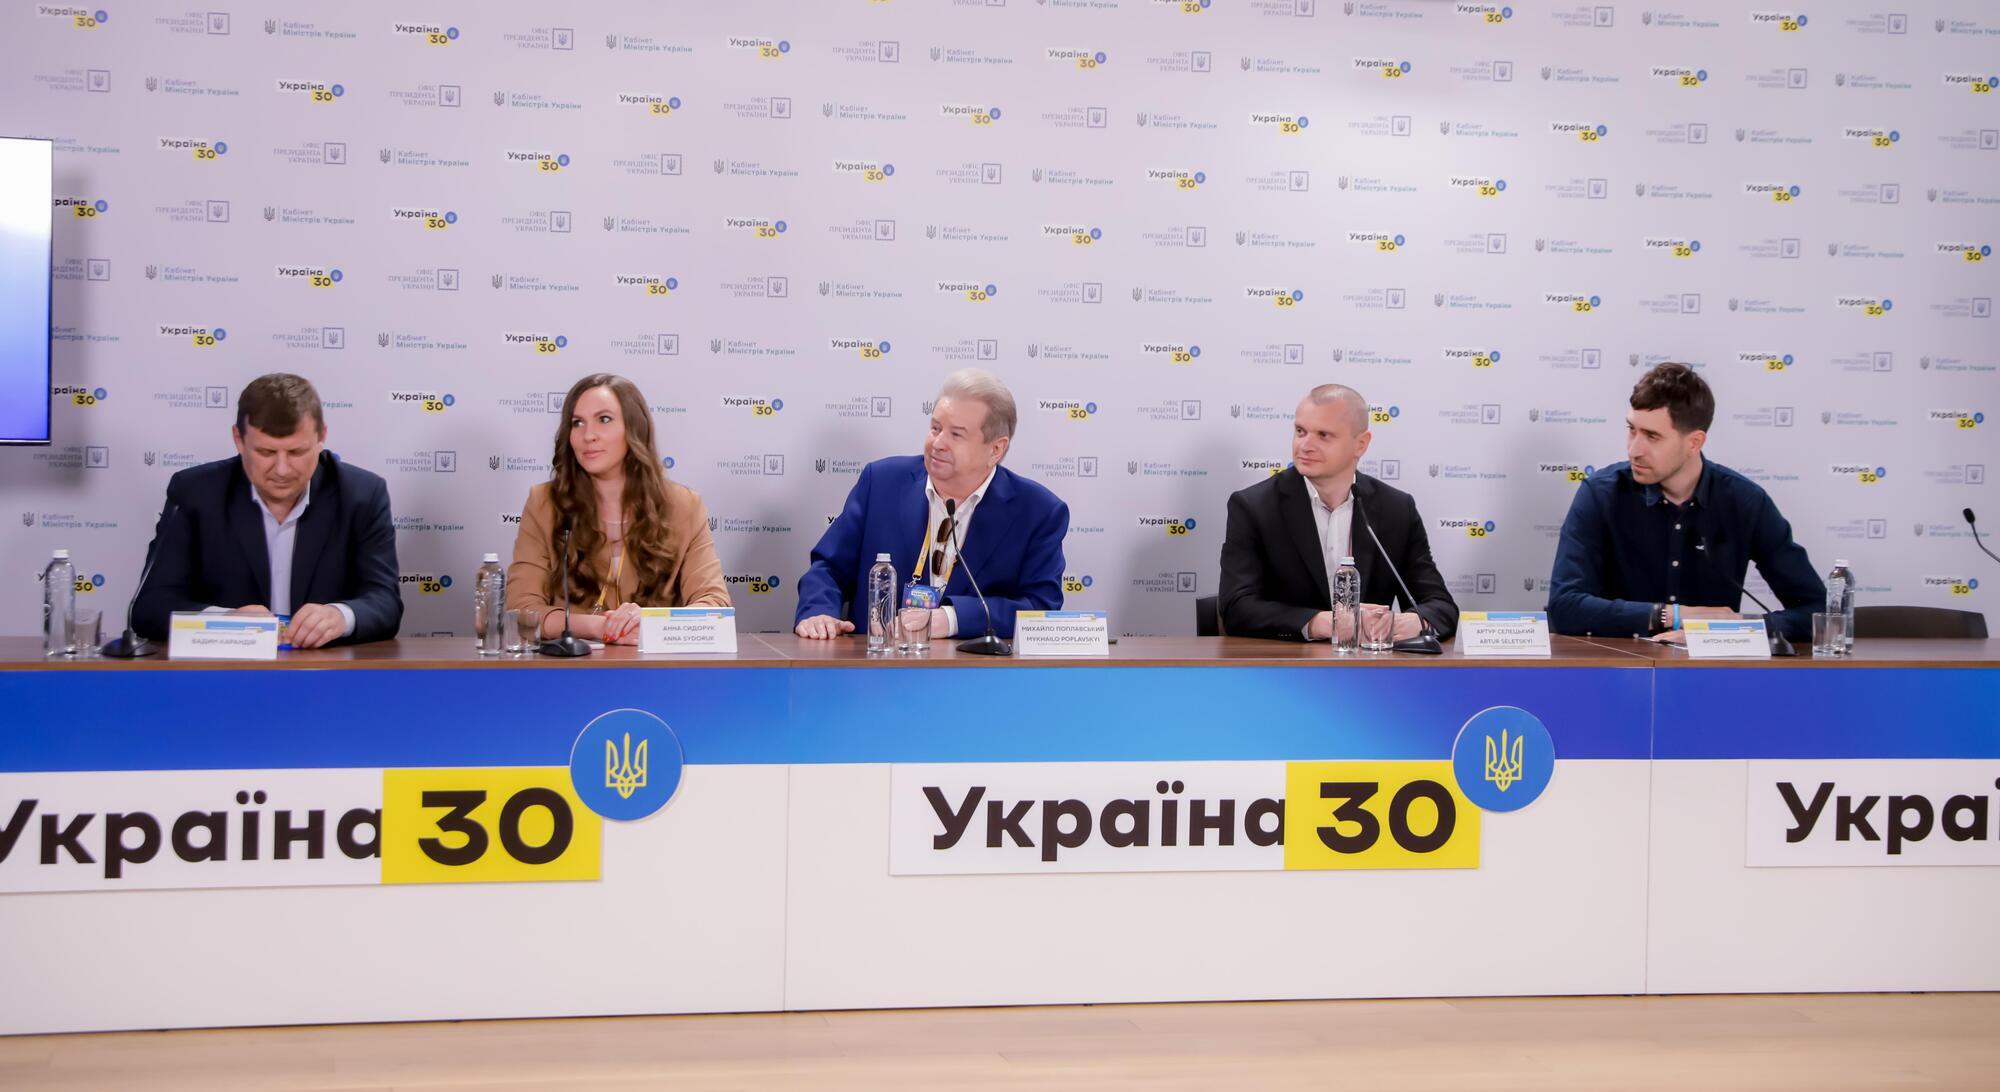 Поплавский – на форуме "Украина 30" Университет культуры педагогически й технически оказался готовым к COVID-19